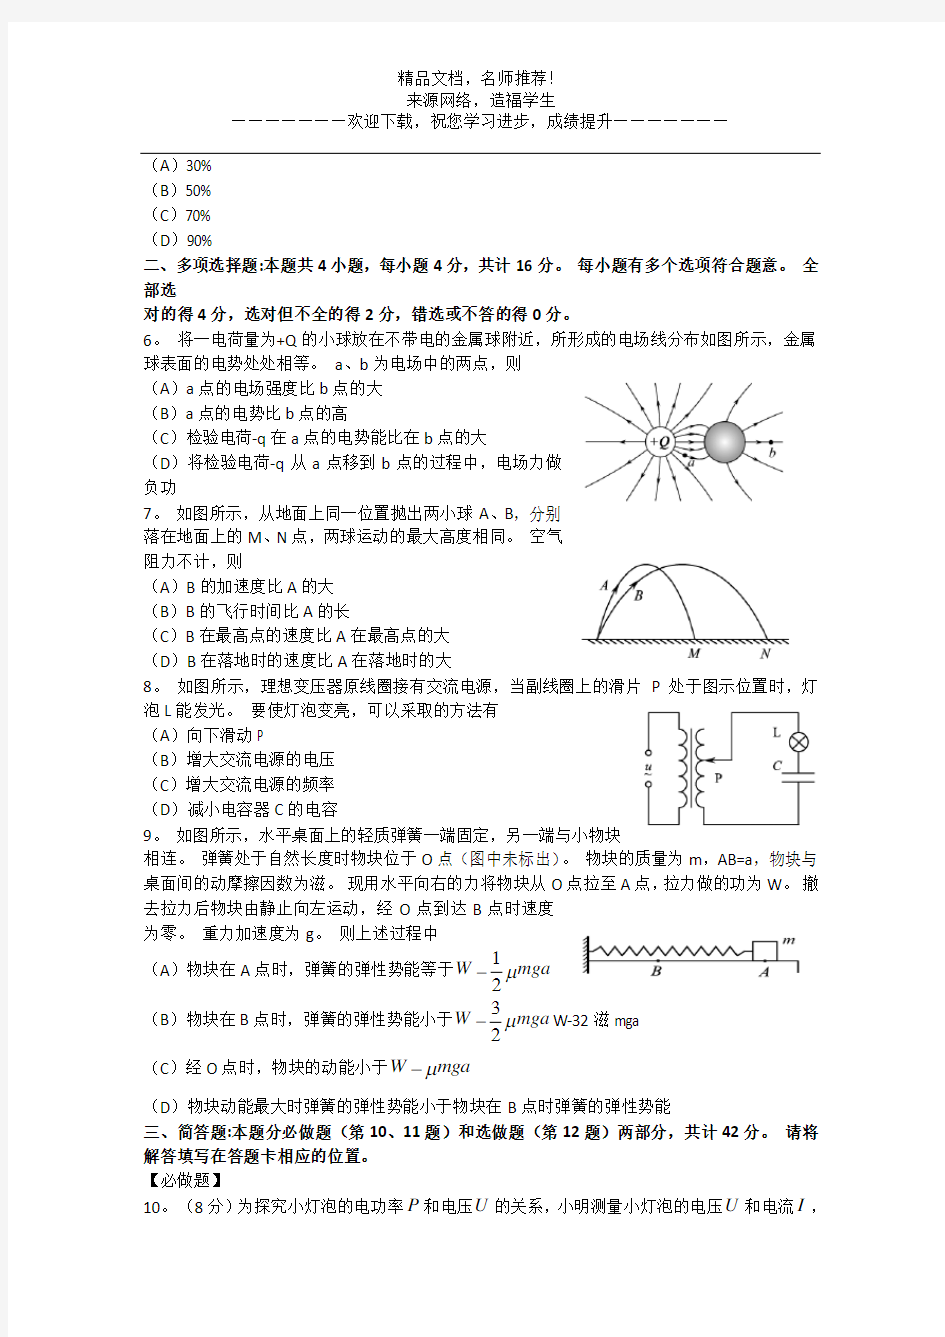 2013年高考真题——物理(江苏卷)